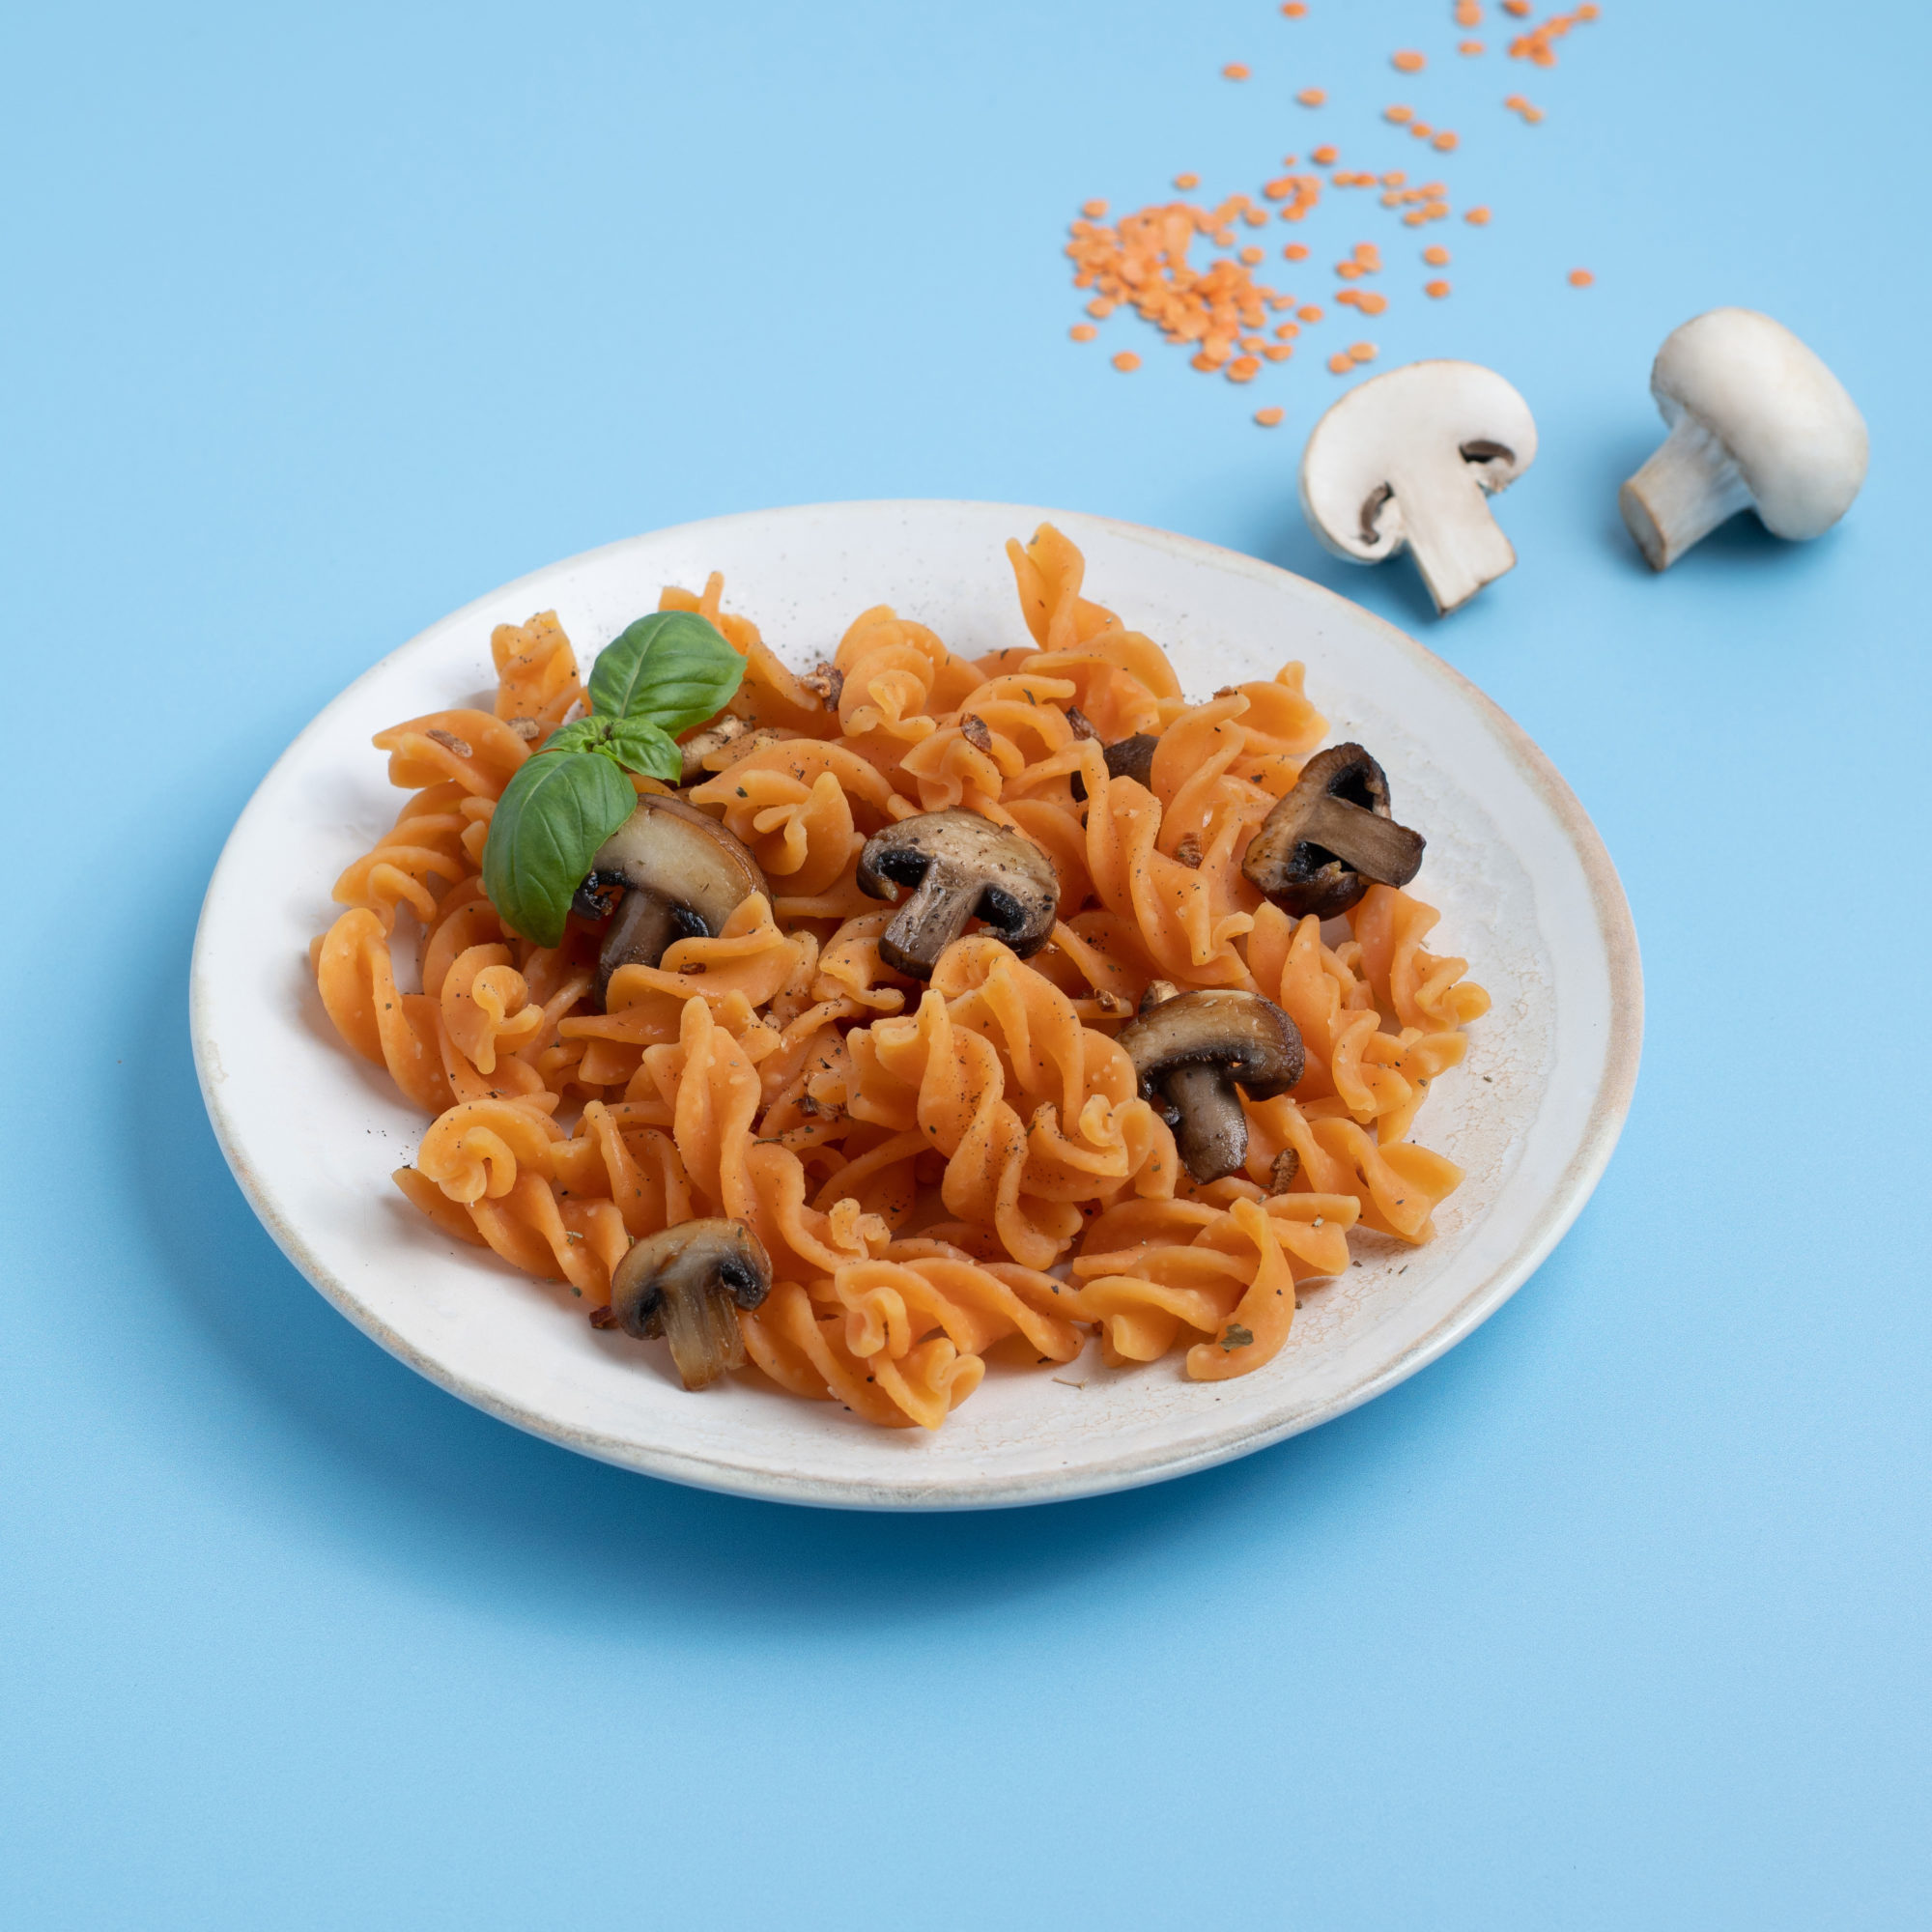 M07_Lentil pasta with mushrooms